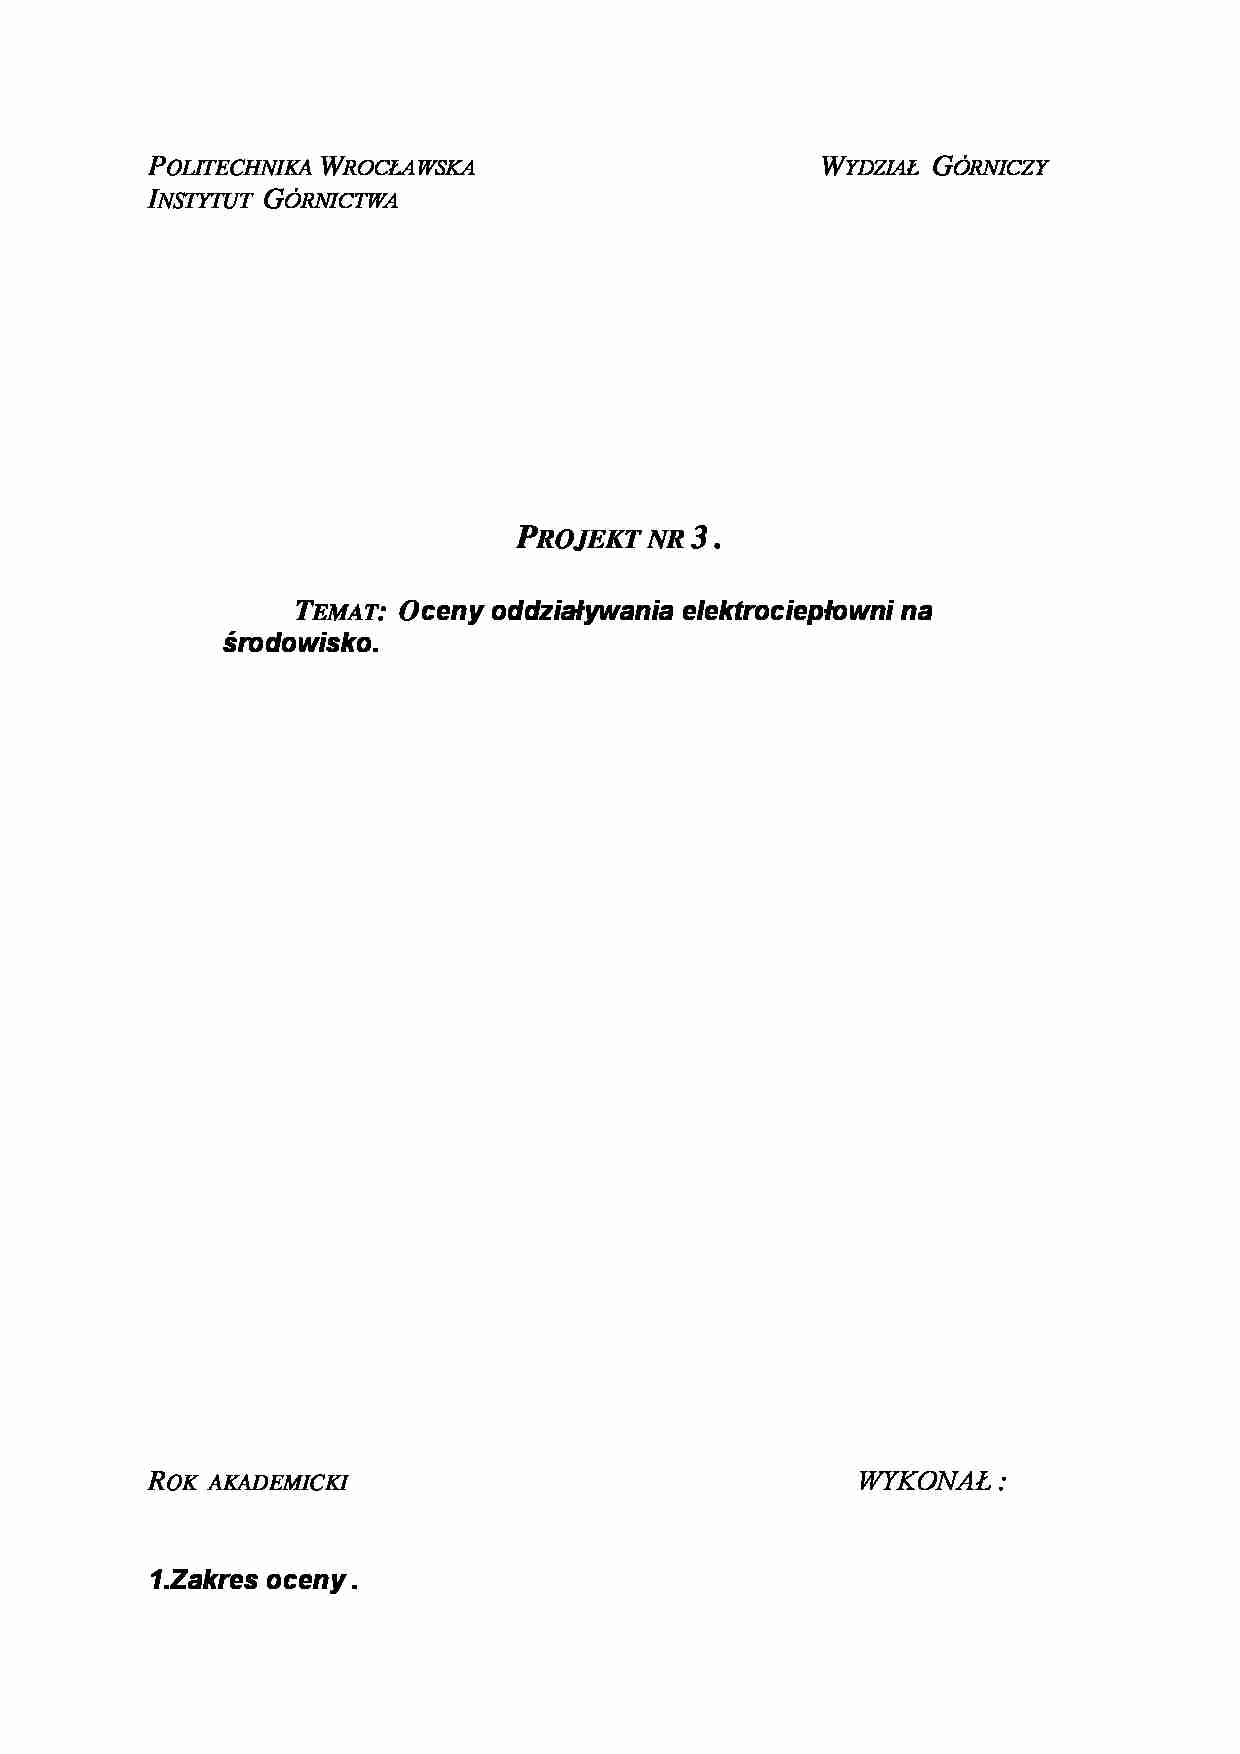 Oceny oddziaływania elektrociepłowni na środowisko-projekt - strona 1